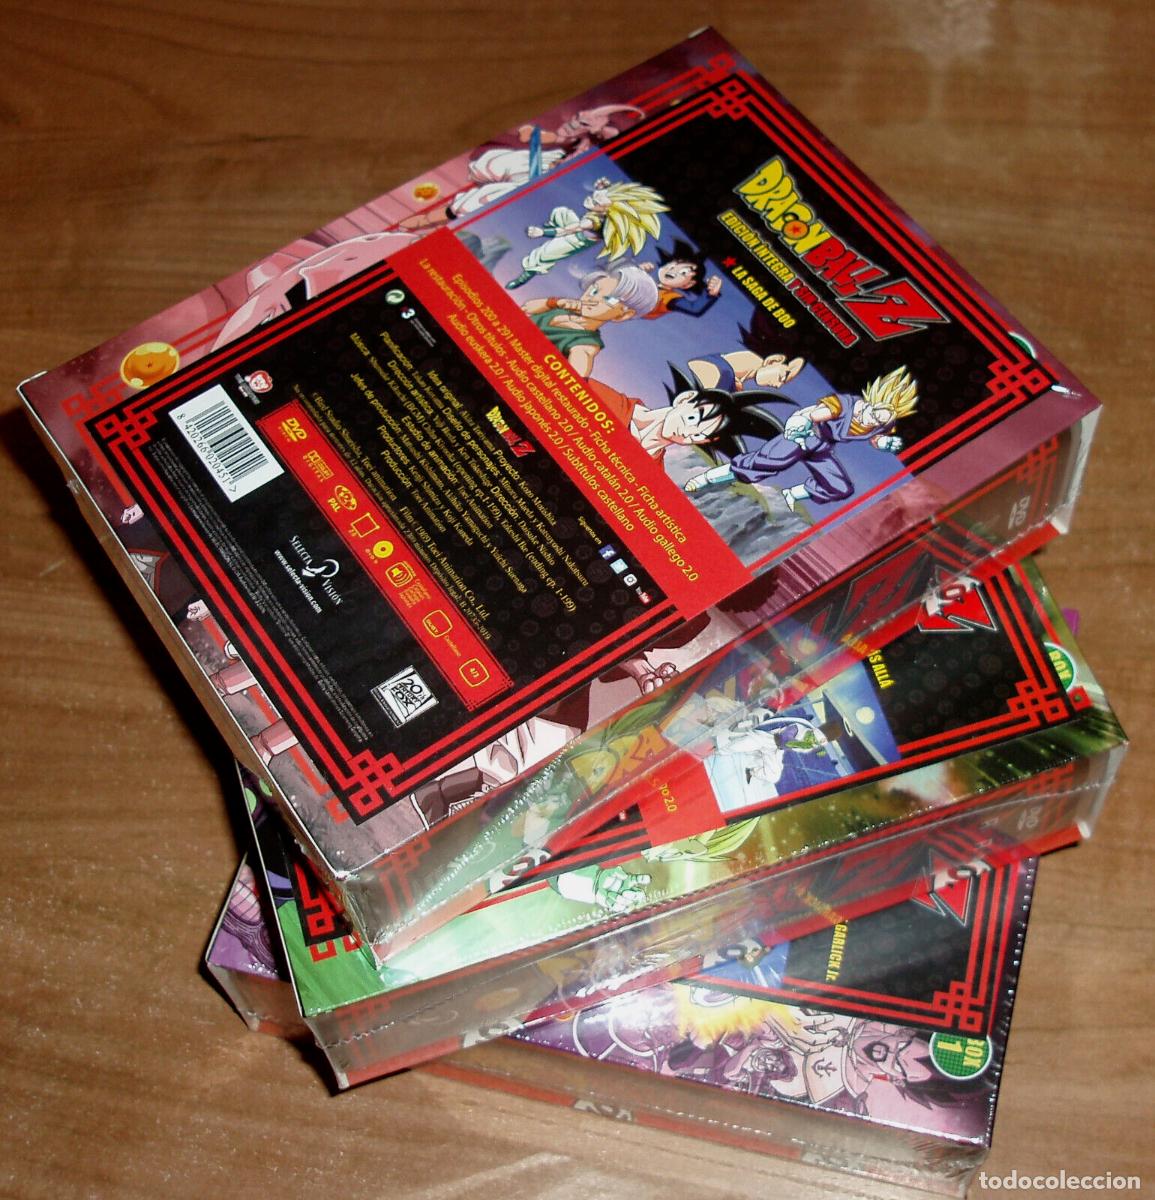 DRAGON BALL Z SAGA COMPLETA BOX 1-3 NUEVO 57 DISCOS DVD EPISODIOS 1-291  ANIME R2